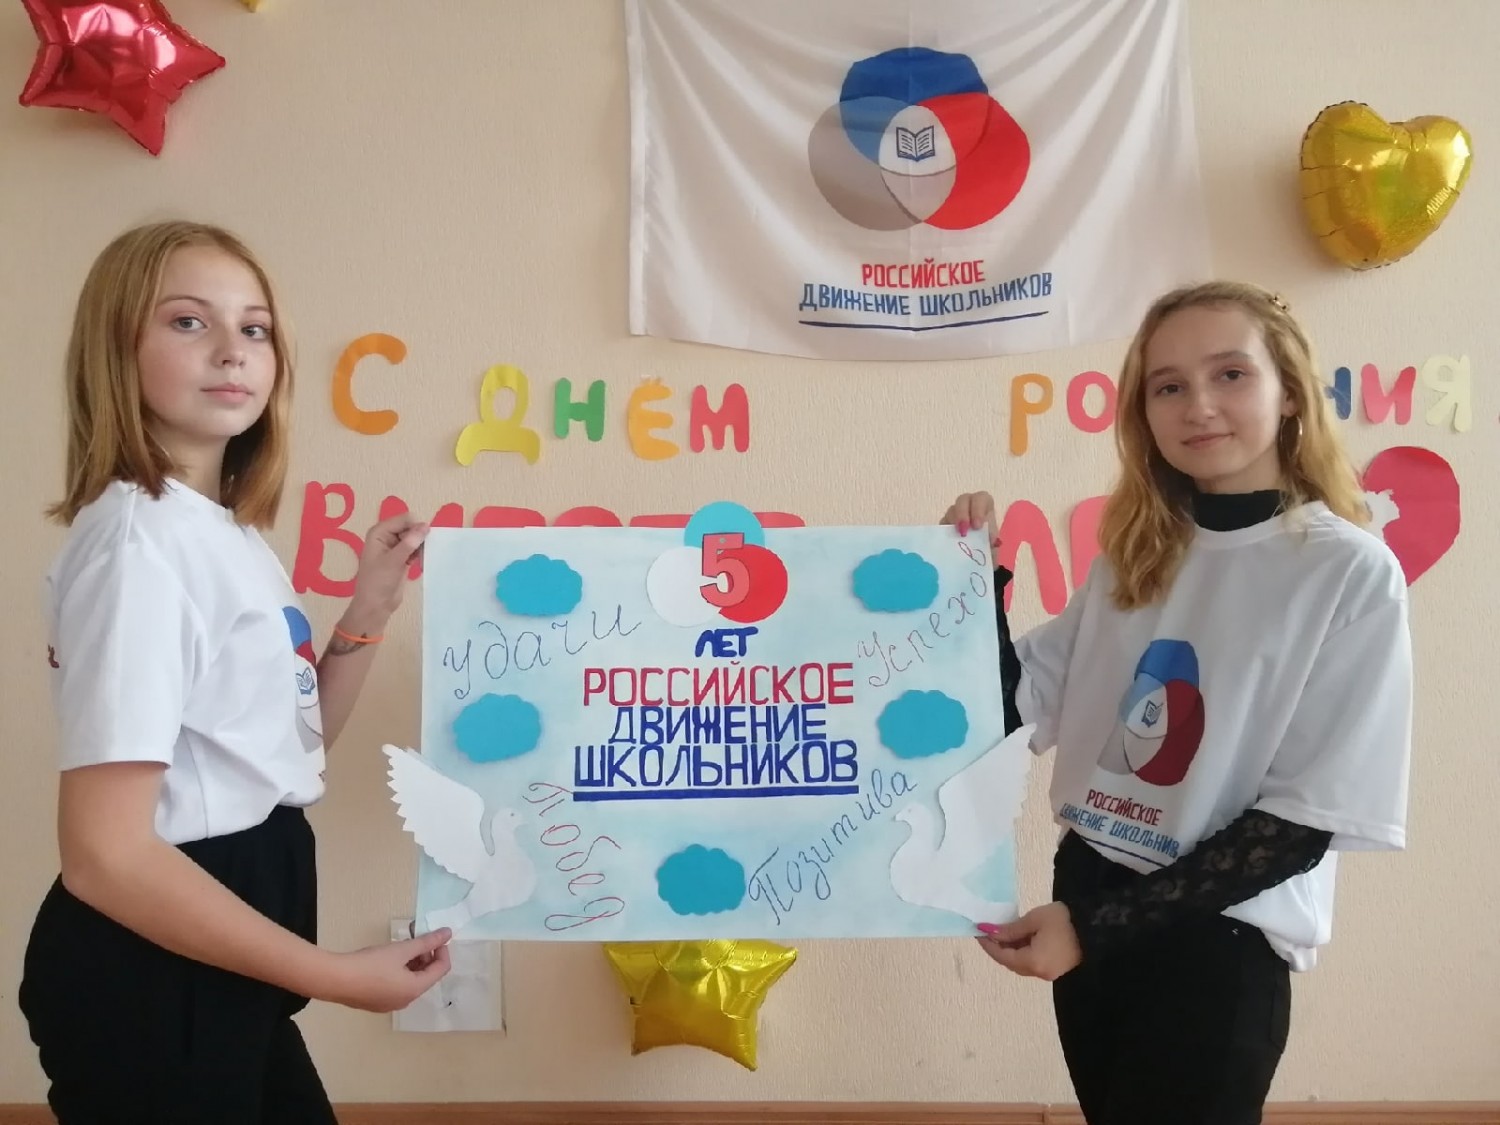 Российское движение школьников летом